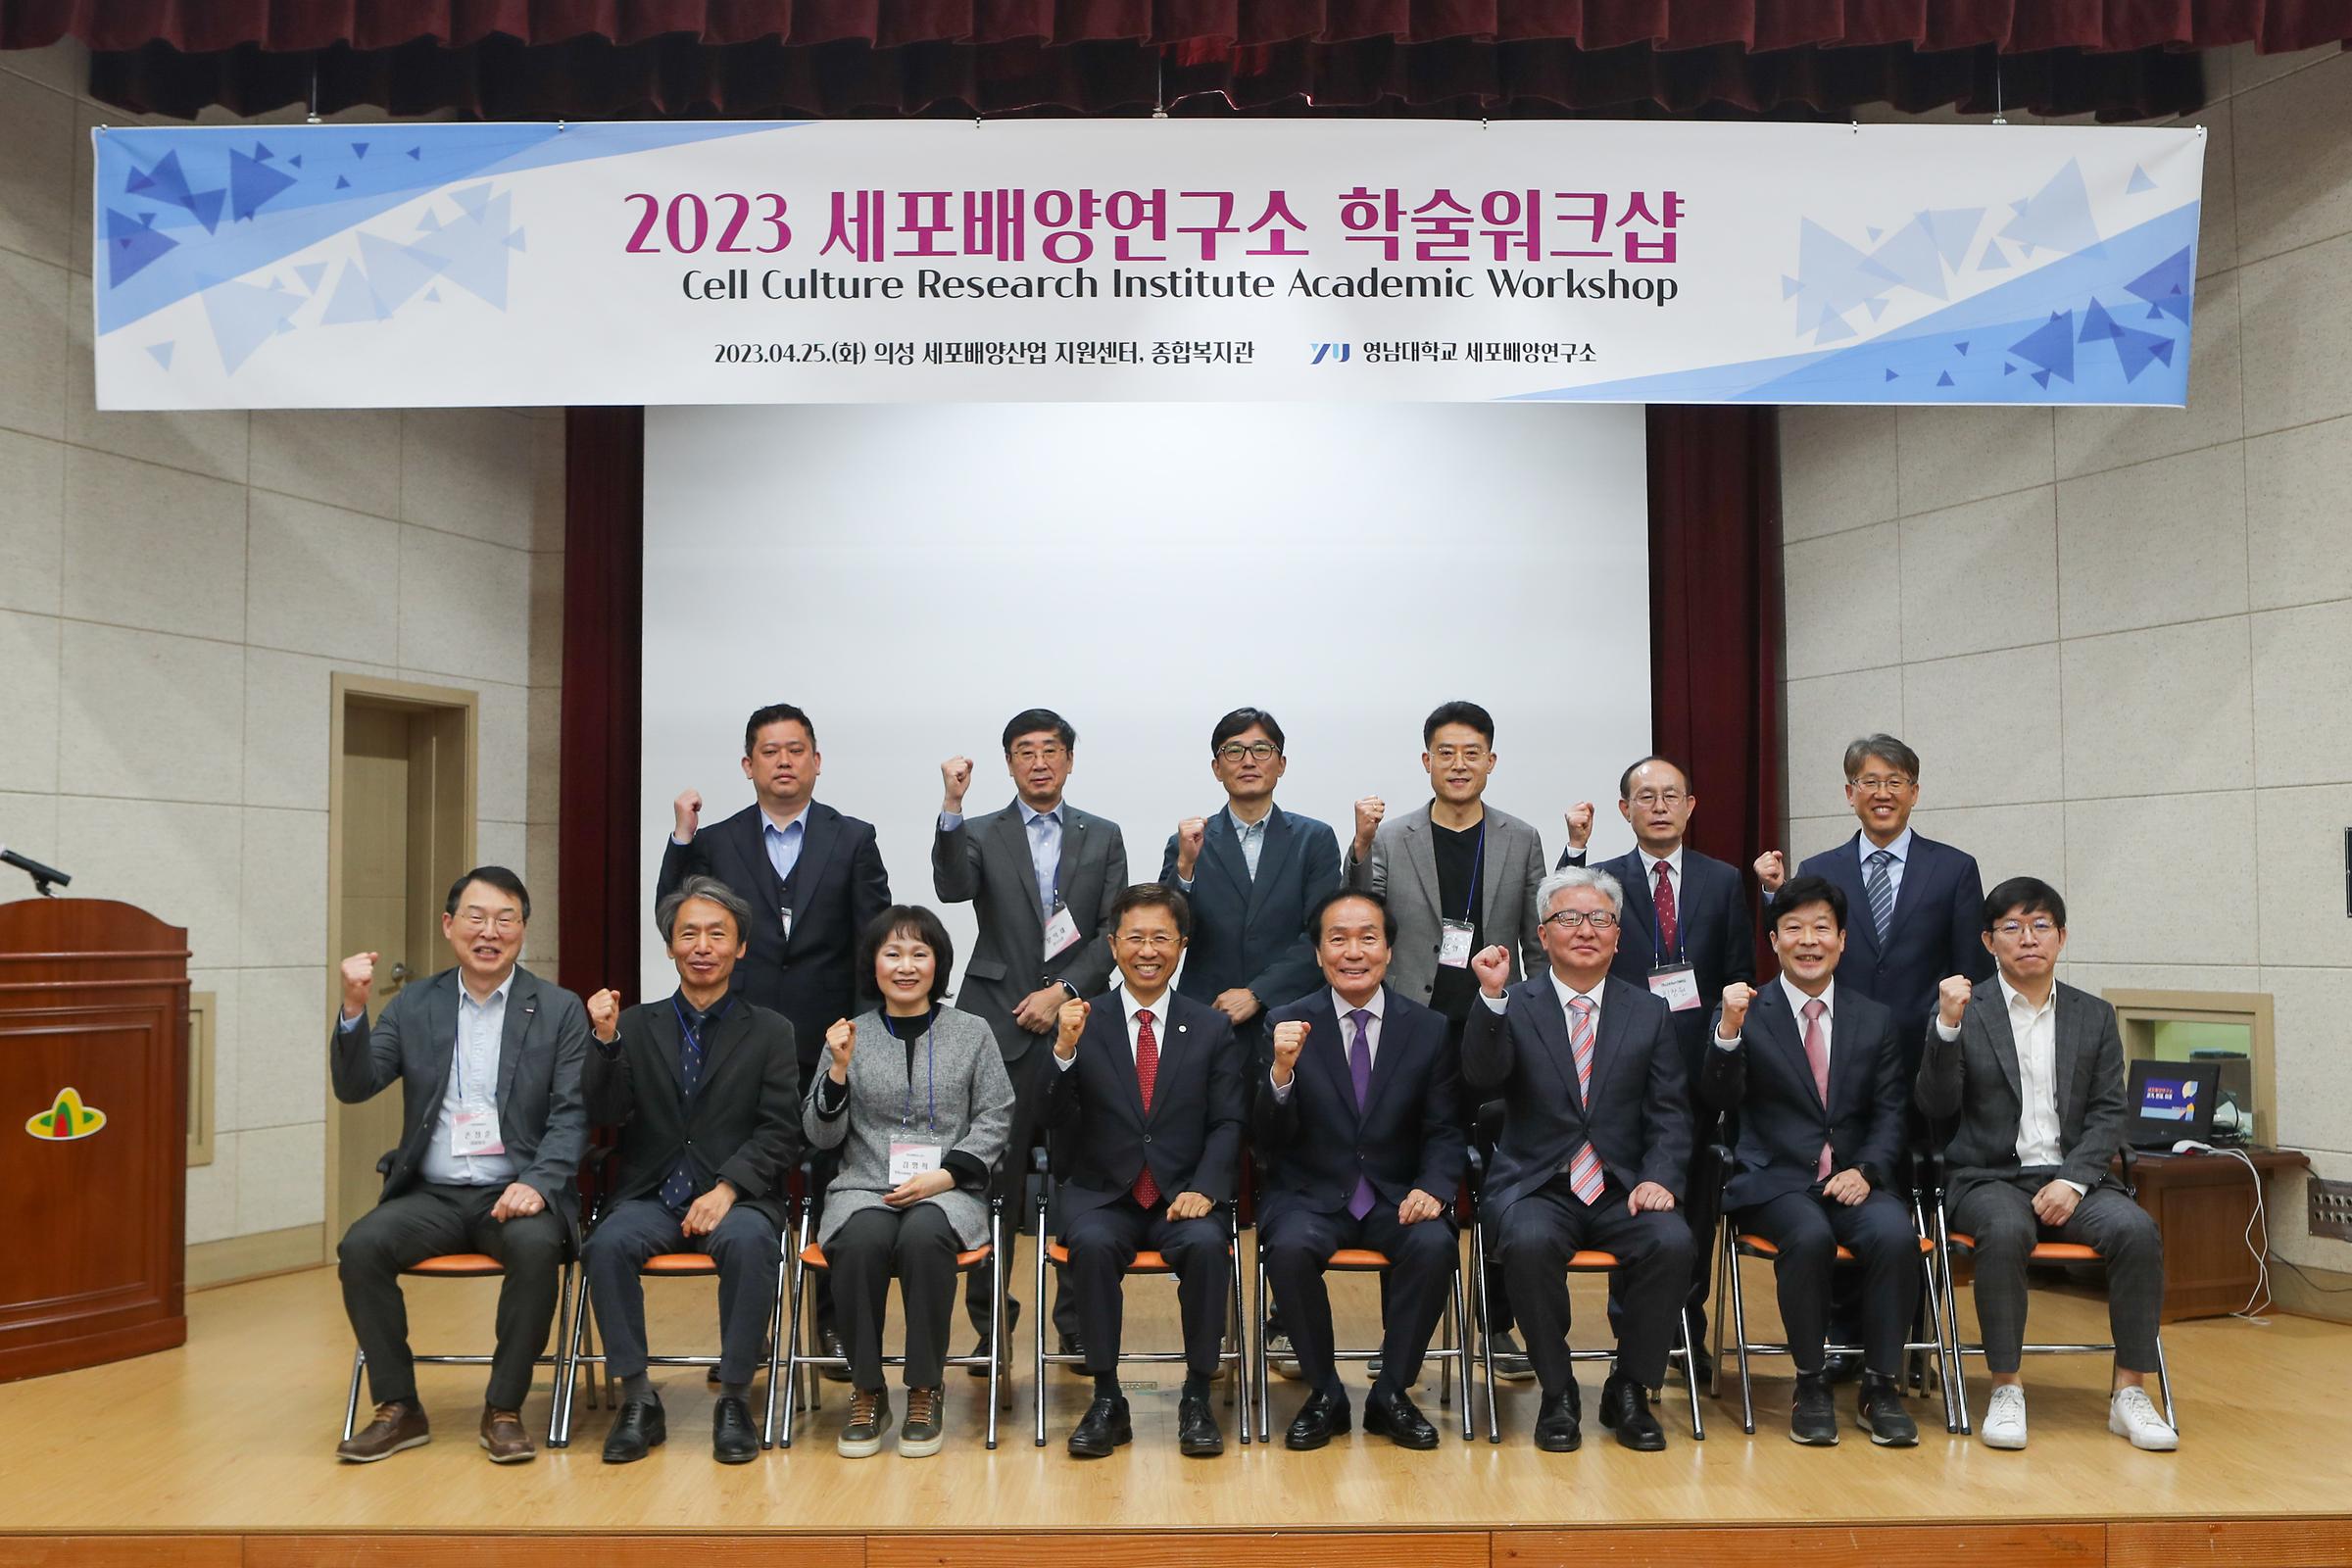 영남대학교 세포배양연구소 학술워크숍 개최 [2023. 04. 25.]